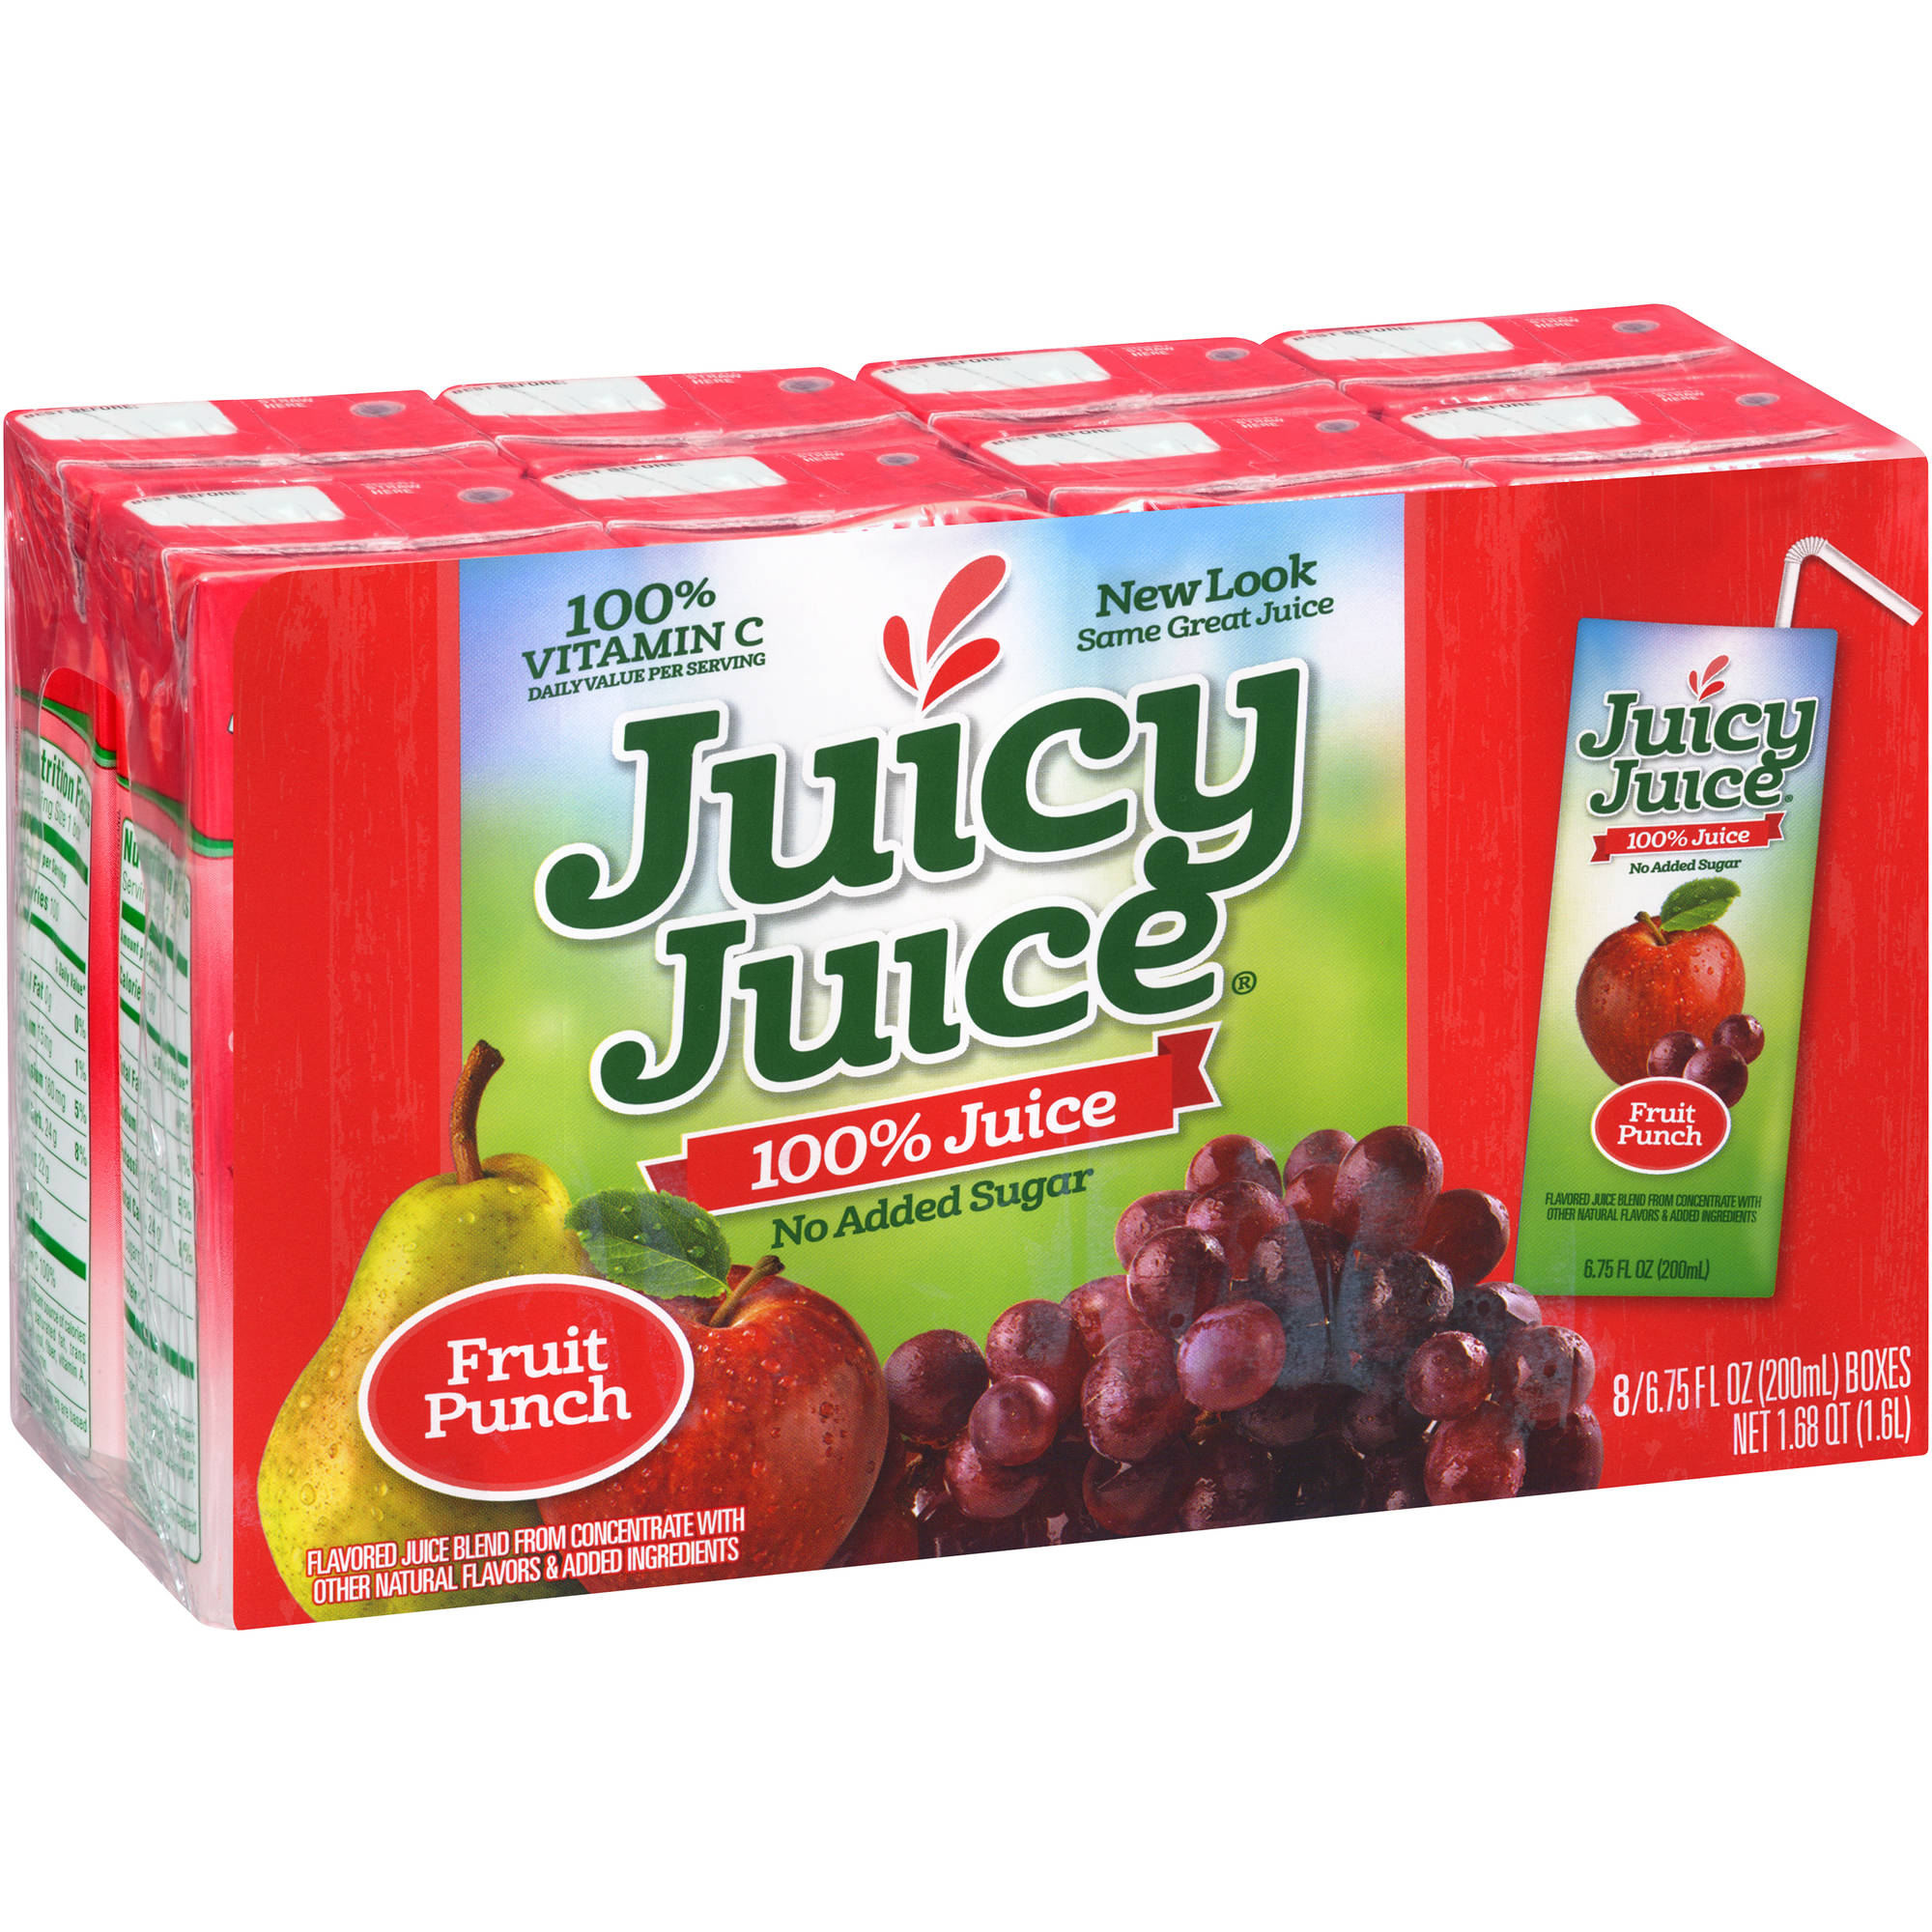 Juicy Juice Fruit Punch 100% Juice, 6.75 fl oz, 8 count.